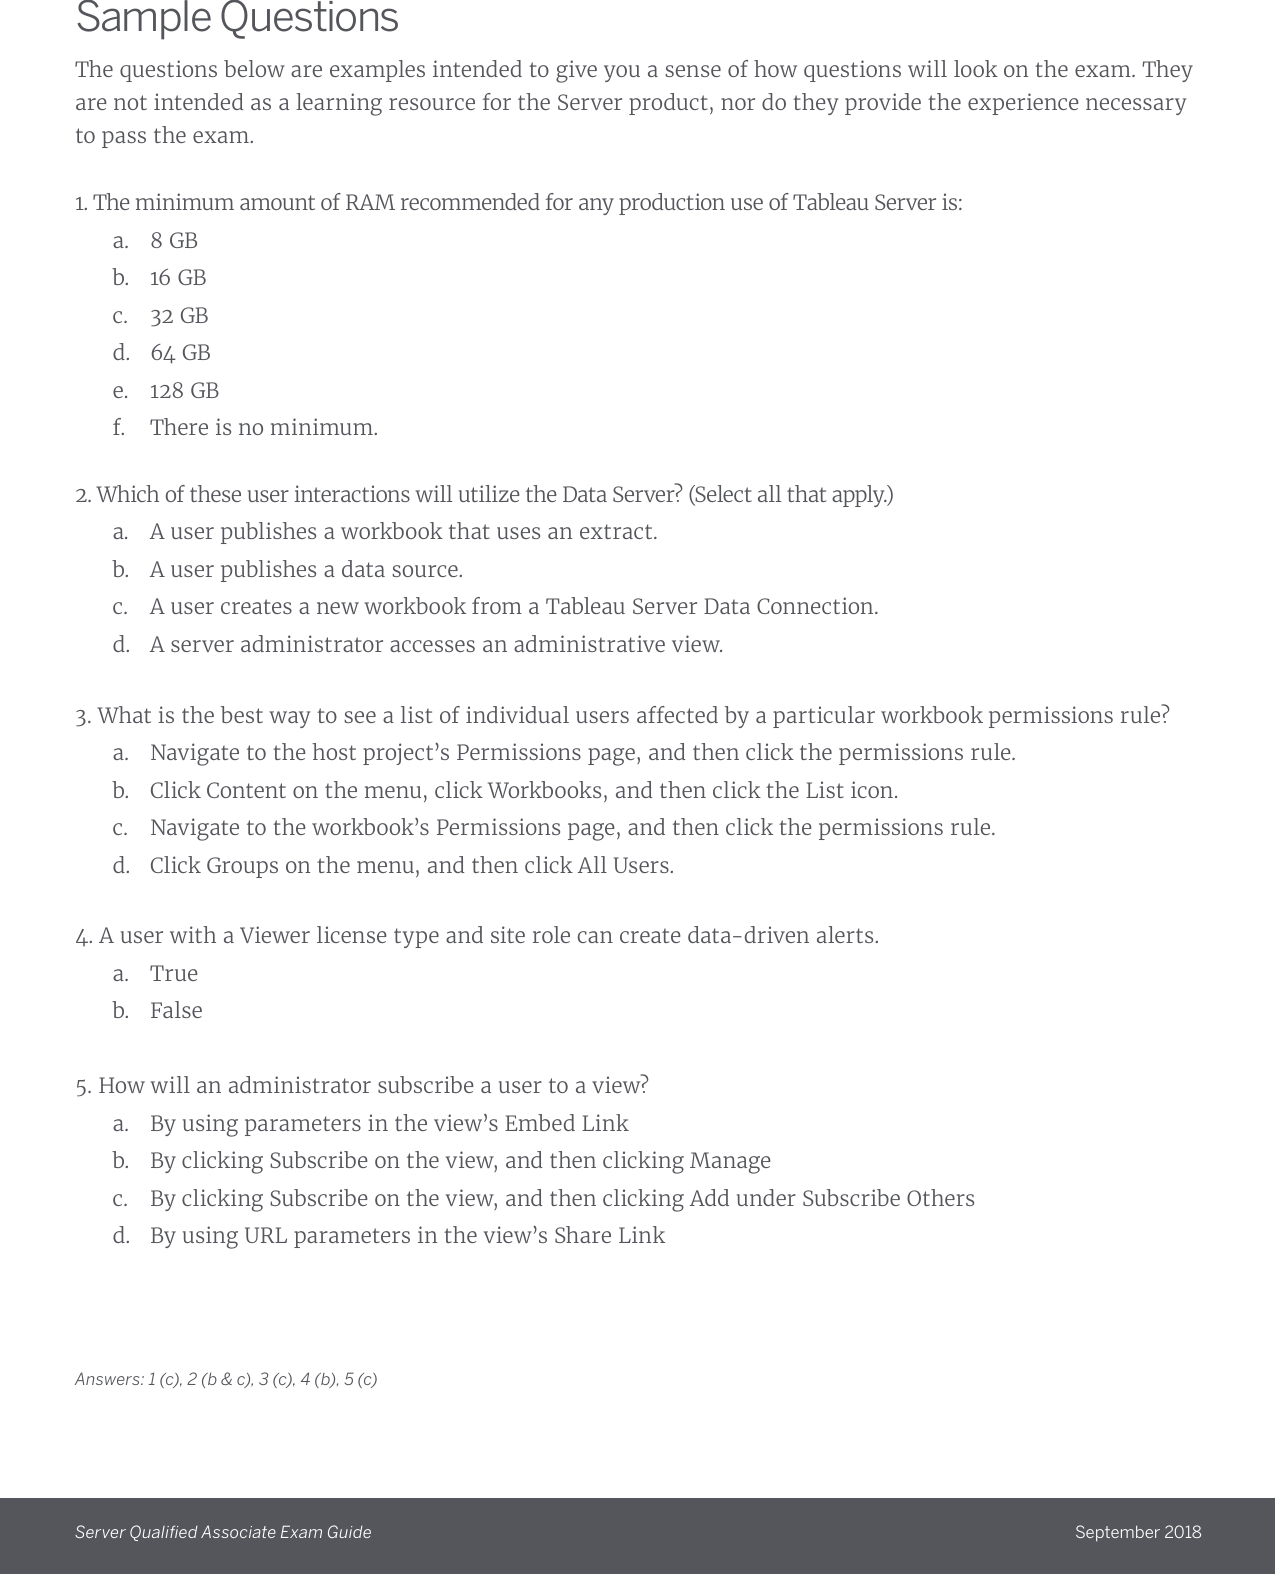 Page 6 of 7 - Server QA Exam Guide